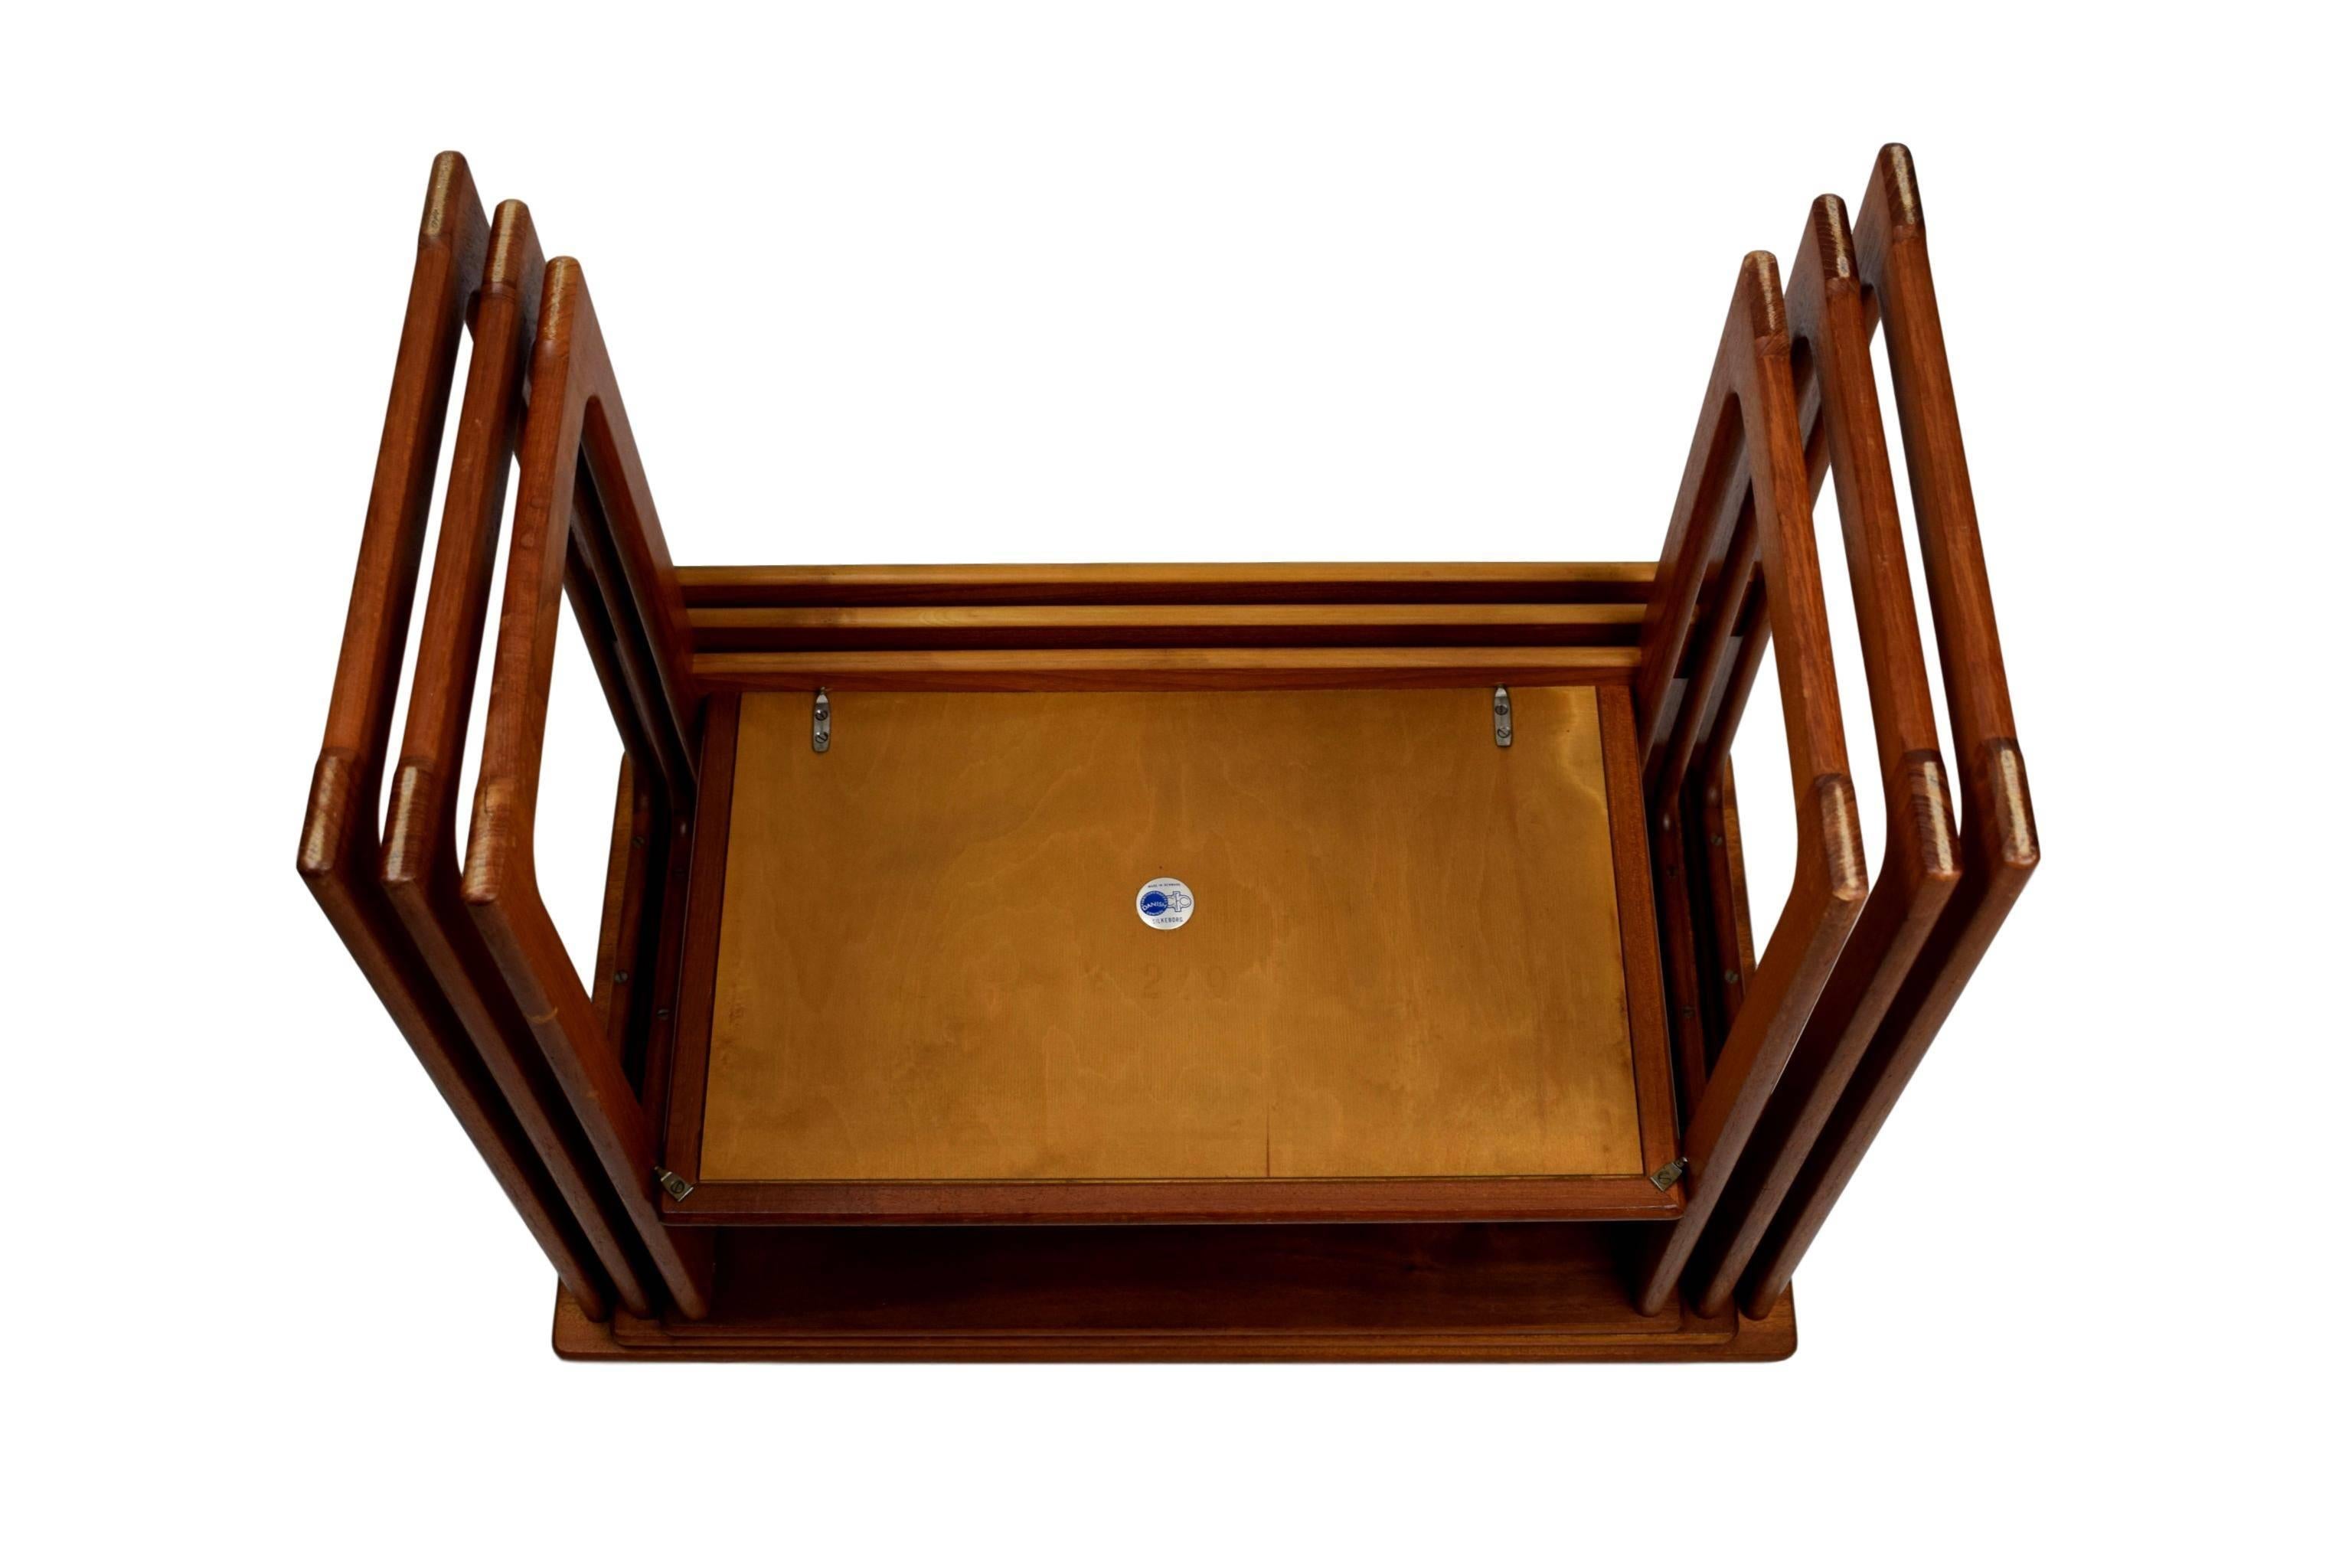 Midcentury Nesting Tables by Johannes Andersen & Illum Wikkelsø Model 219, Teak For Sale 2